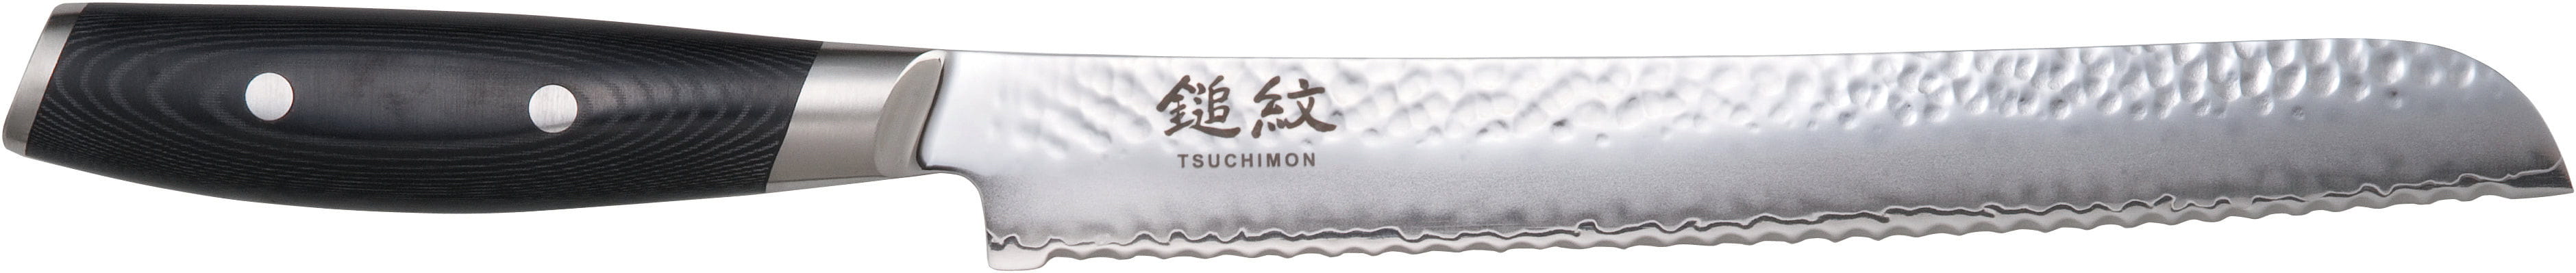 Yaxell Couteau à pain tsuchimon, 23 cm